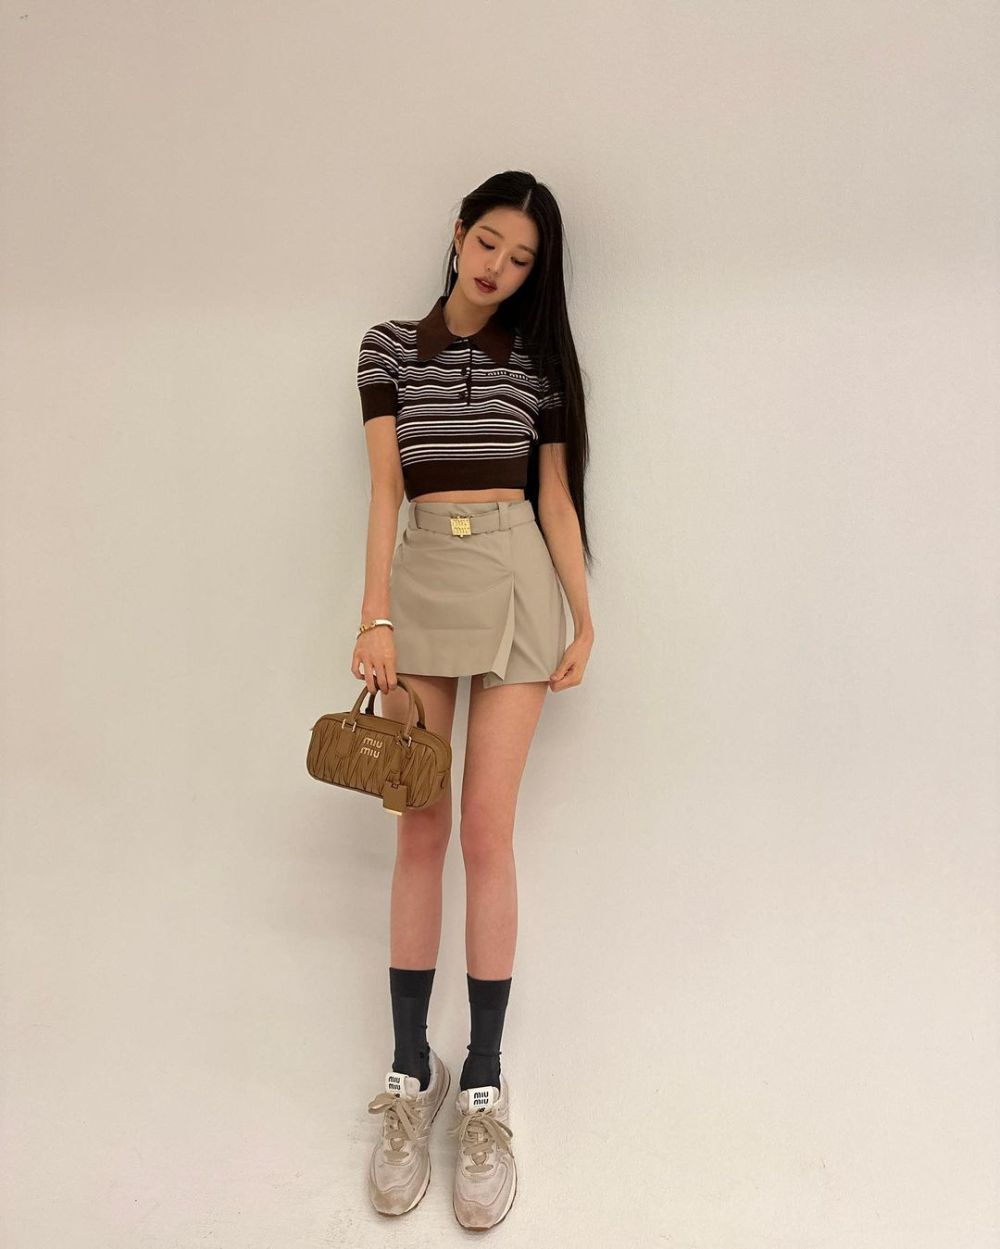 8 Inspirasi Outfit Feminim ala Jang Wonyoung, Manis Banget Pakai Rok!